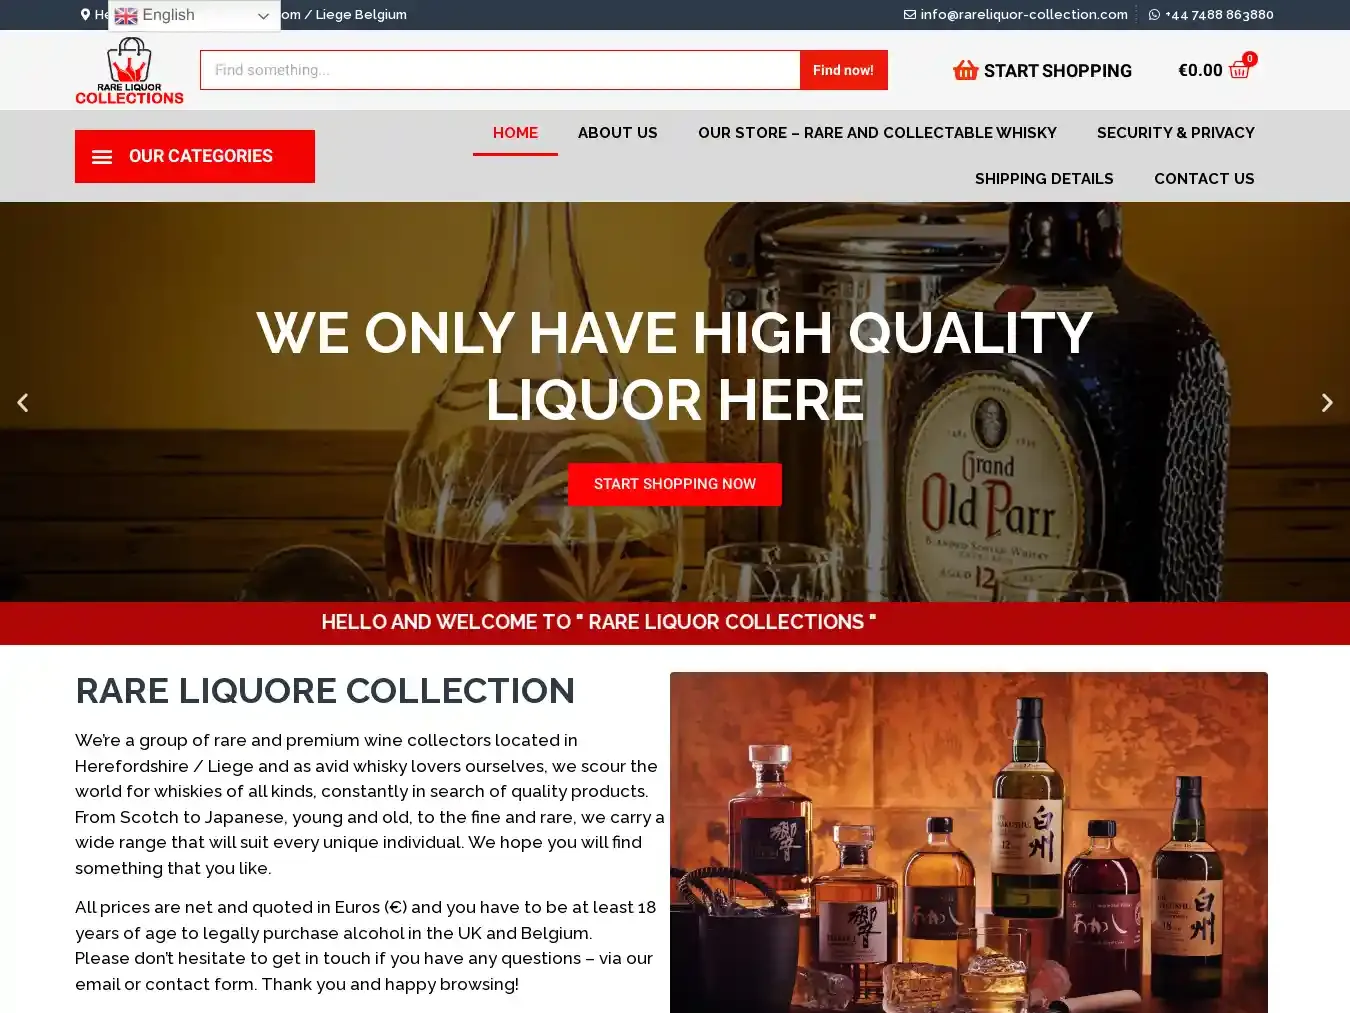 Rareliquor-collection.com Fraudulent Whisky website.